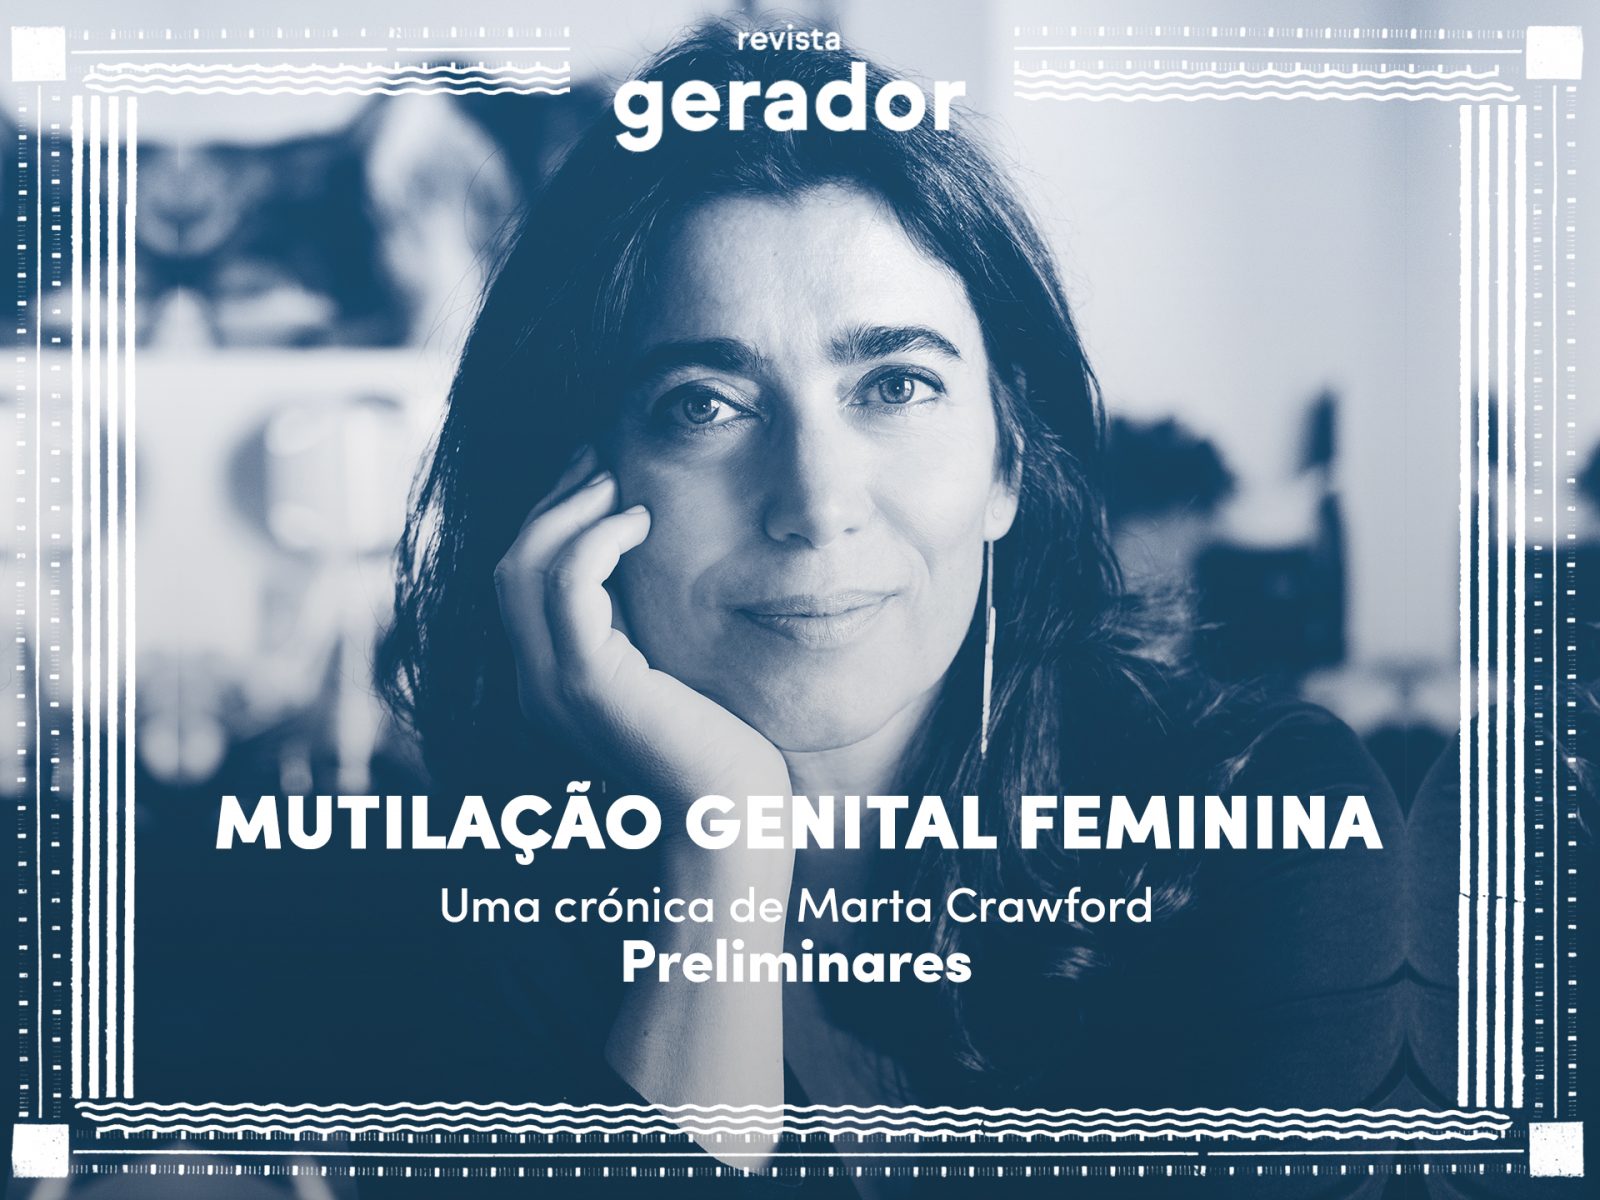 preliminares-uma-cronica-marta-crawford-revista-janeiro-mgf